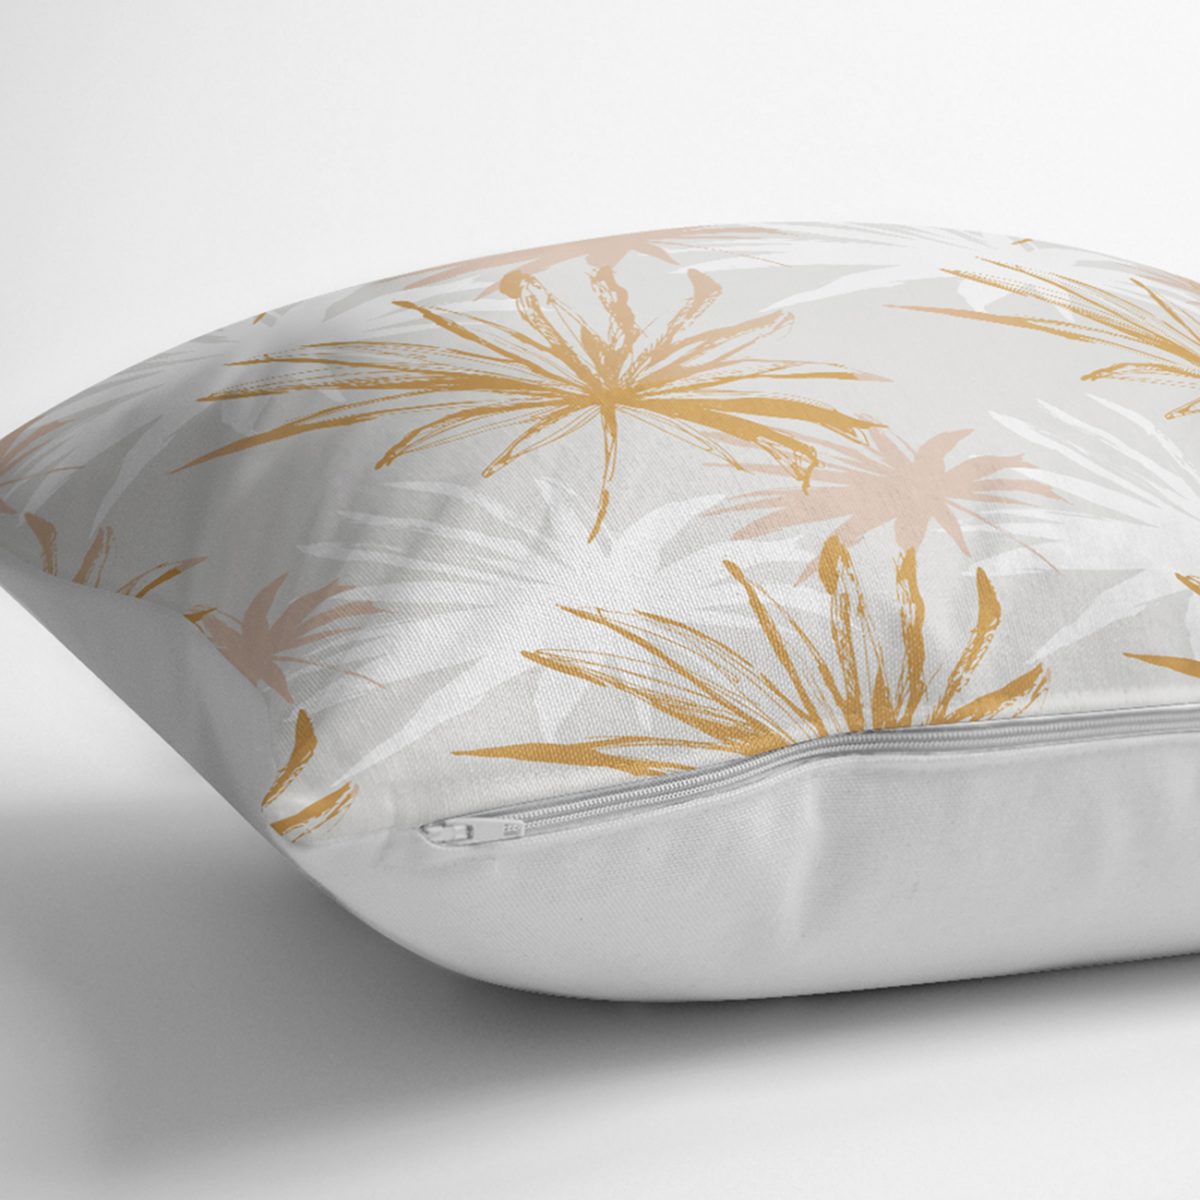 Beyaz Ve Gold Yaprak Desenli Özel Tasarım Modern Yastık Kılıfı Realhomes